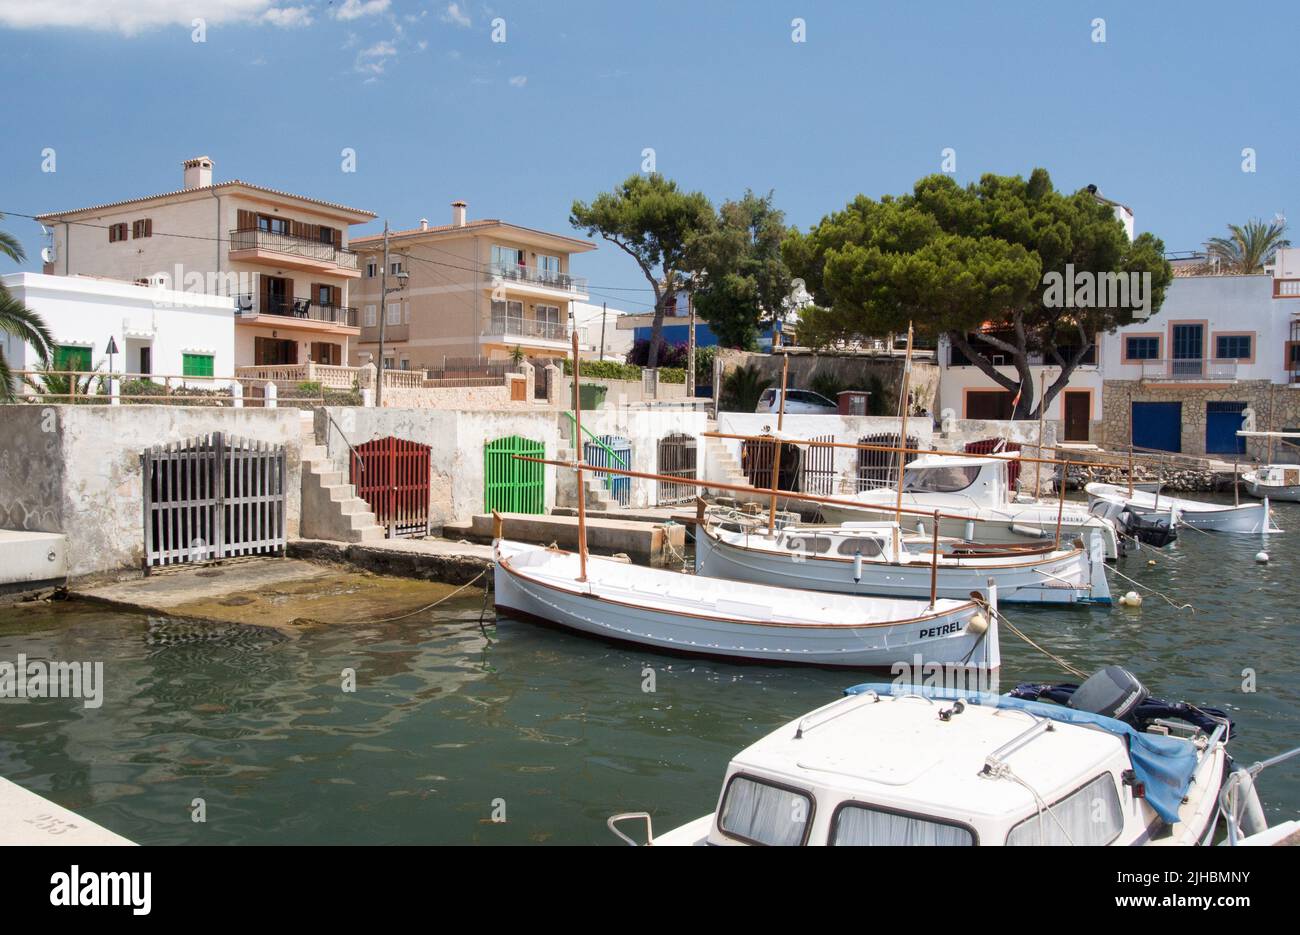 Porto Colom Marina, Majorca,Spain Stock Photo